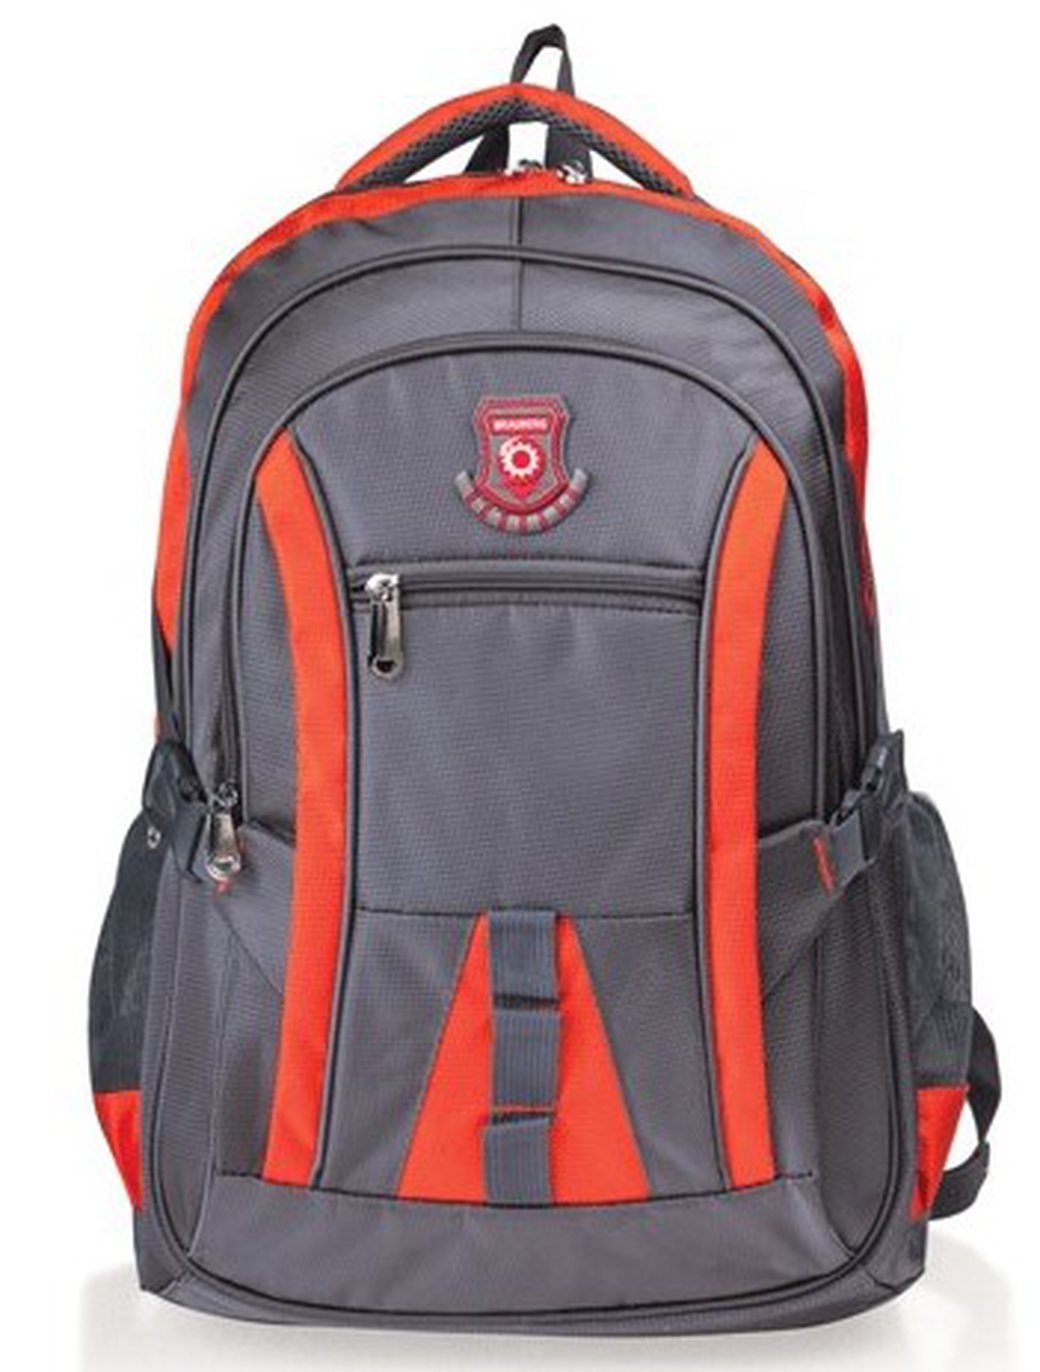 Рюкзак для школы и офиса Brauberg SpeedWay 2, 46*32*19см, 25 л, серо-оранжевый фото